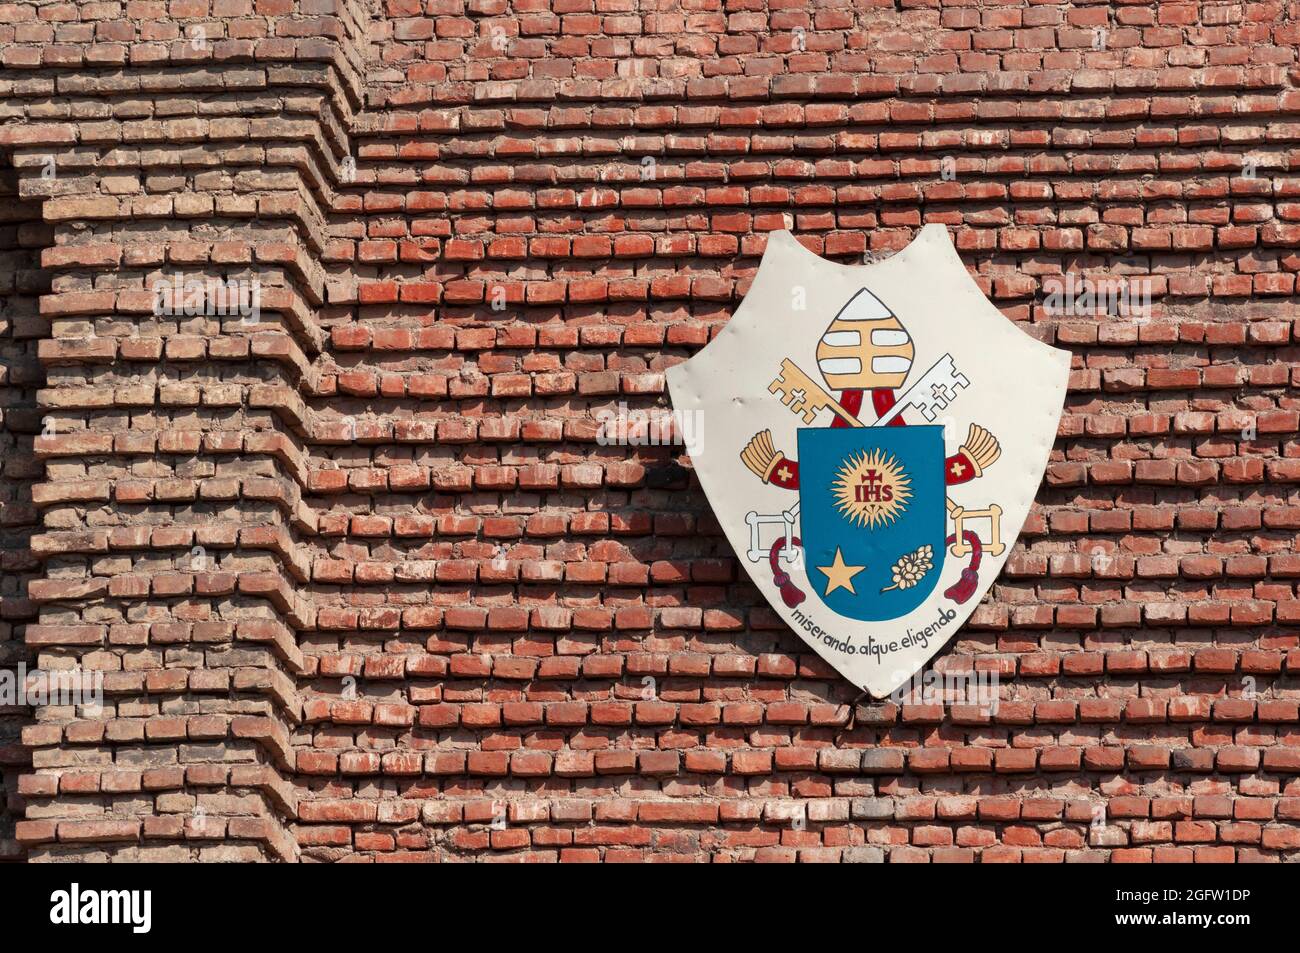 Italia, Lombardia, Pavia, Piazza del Duomo, dettaglio facciata Duomo, stemma di Papa Francesco Foto Stock